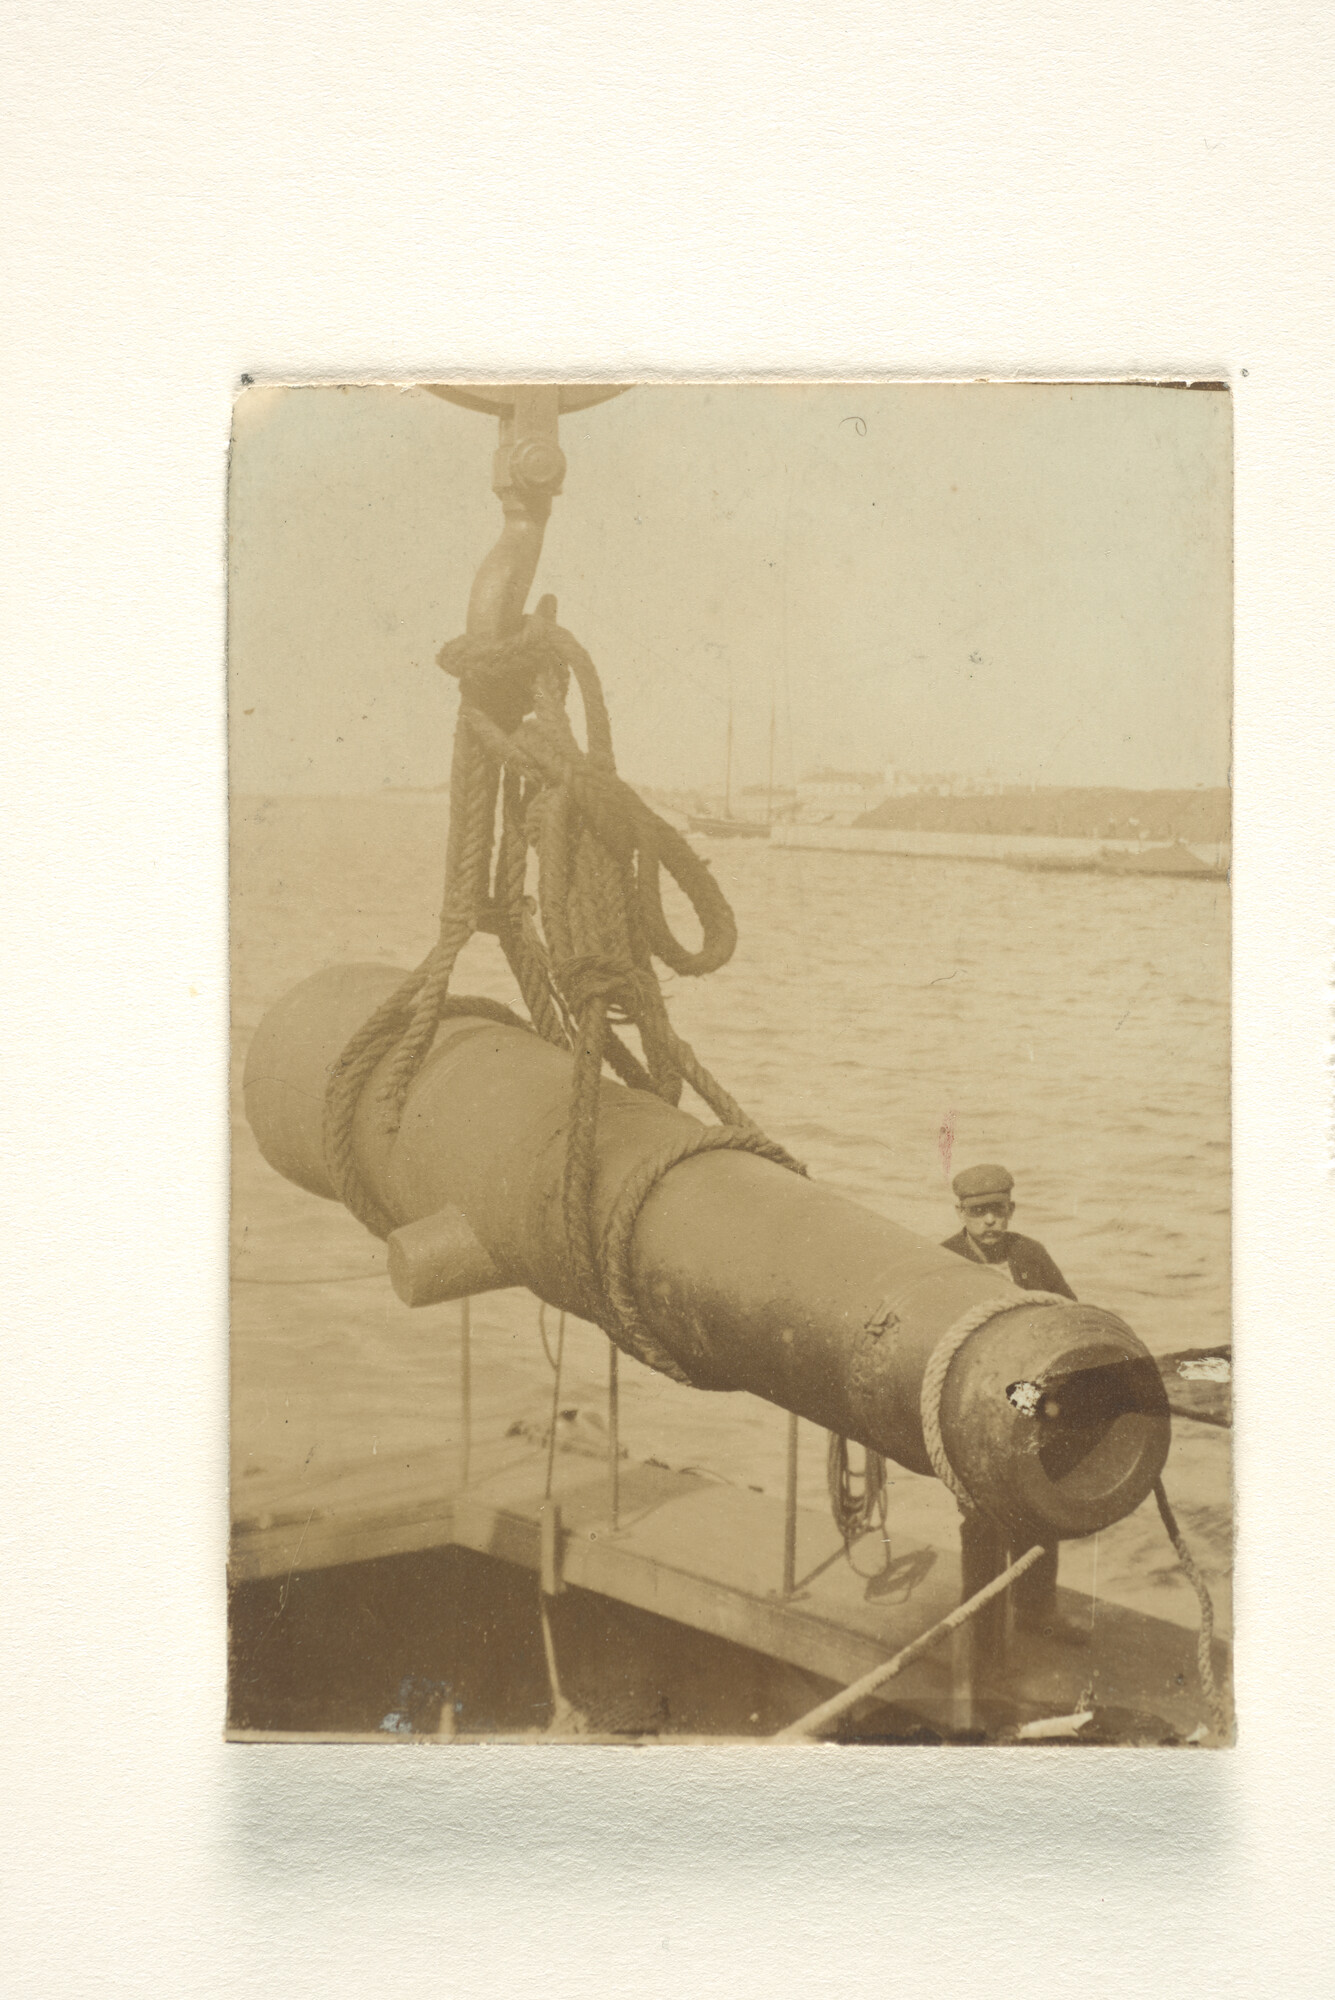 1994.7116; Het aan boord hijsen van een bronzen kanon van de 'Brederode' van het pantserschip Hr.Ms. 'Evertsen' afgemeerd in Kopenhagen [...]; fotoreportage